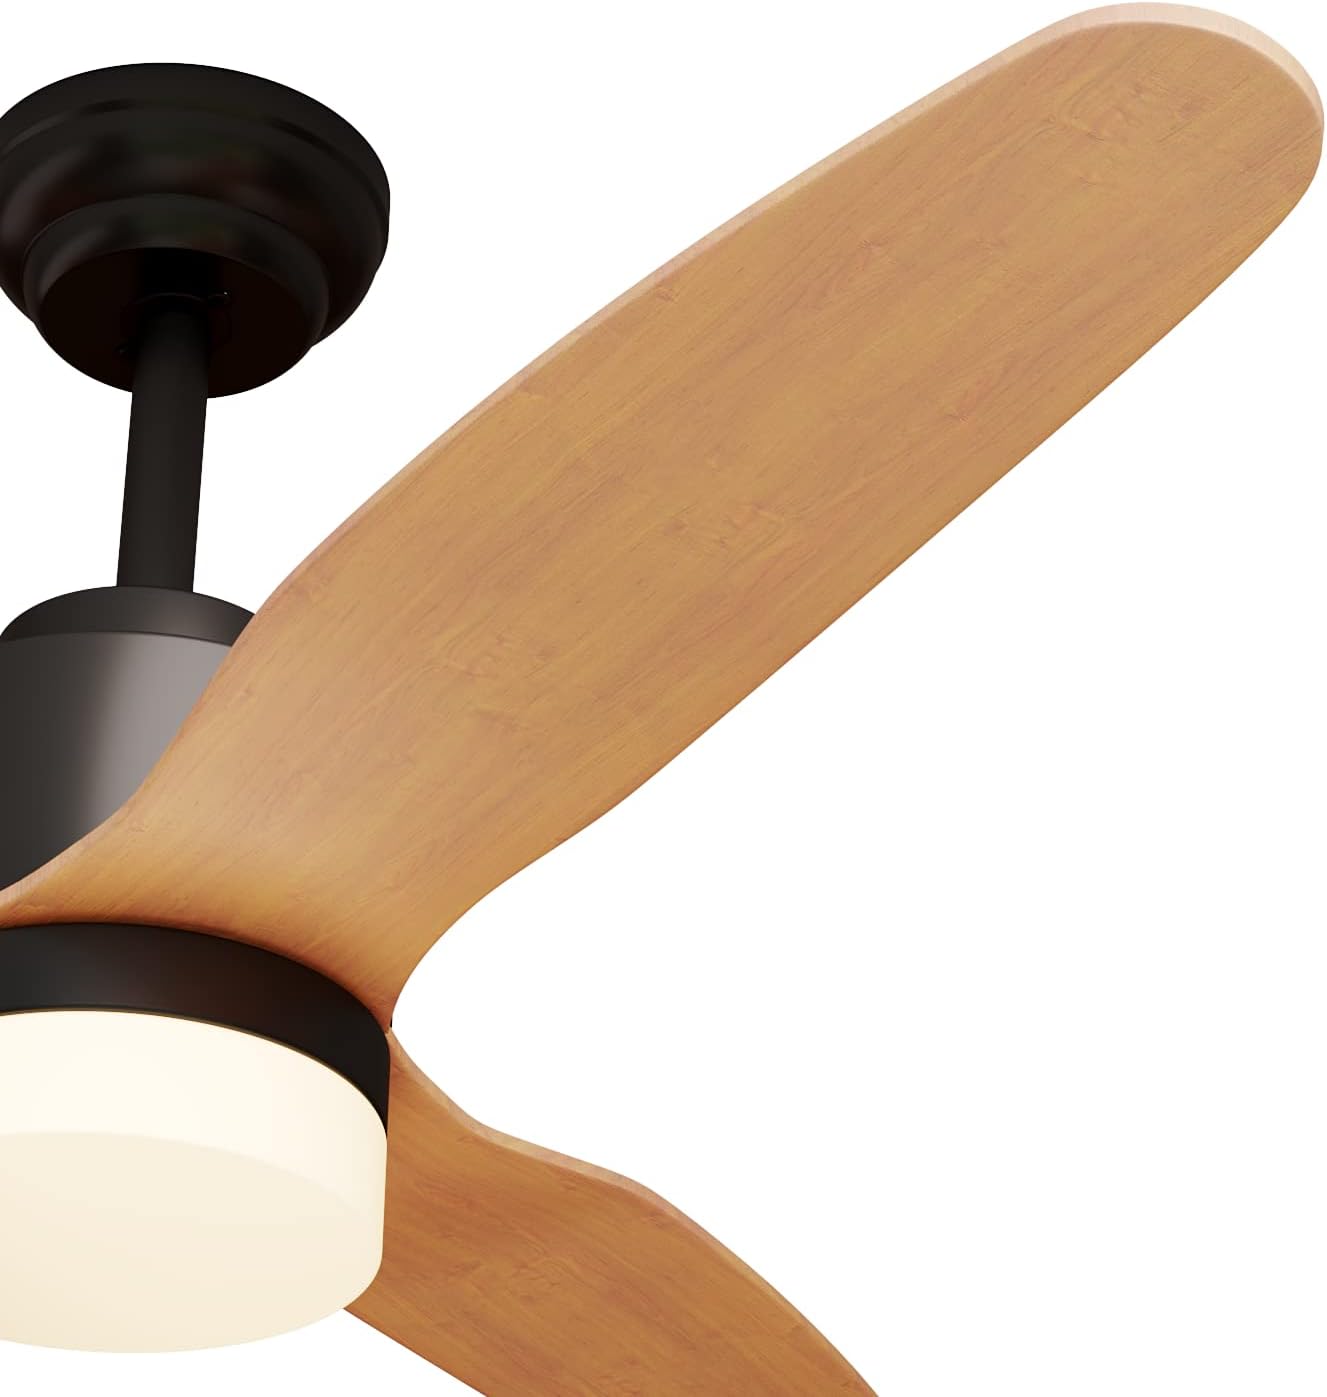 SONNI Deckenventilator mit Beleuchtung und Fernbedienung Leise in 3 Farbtemperatur 119cm Schwarz und Holz - Minimalistisches Design